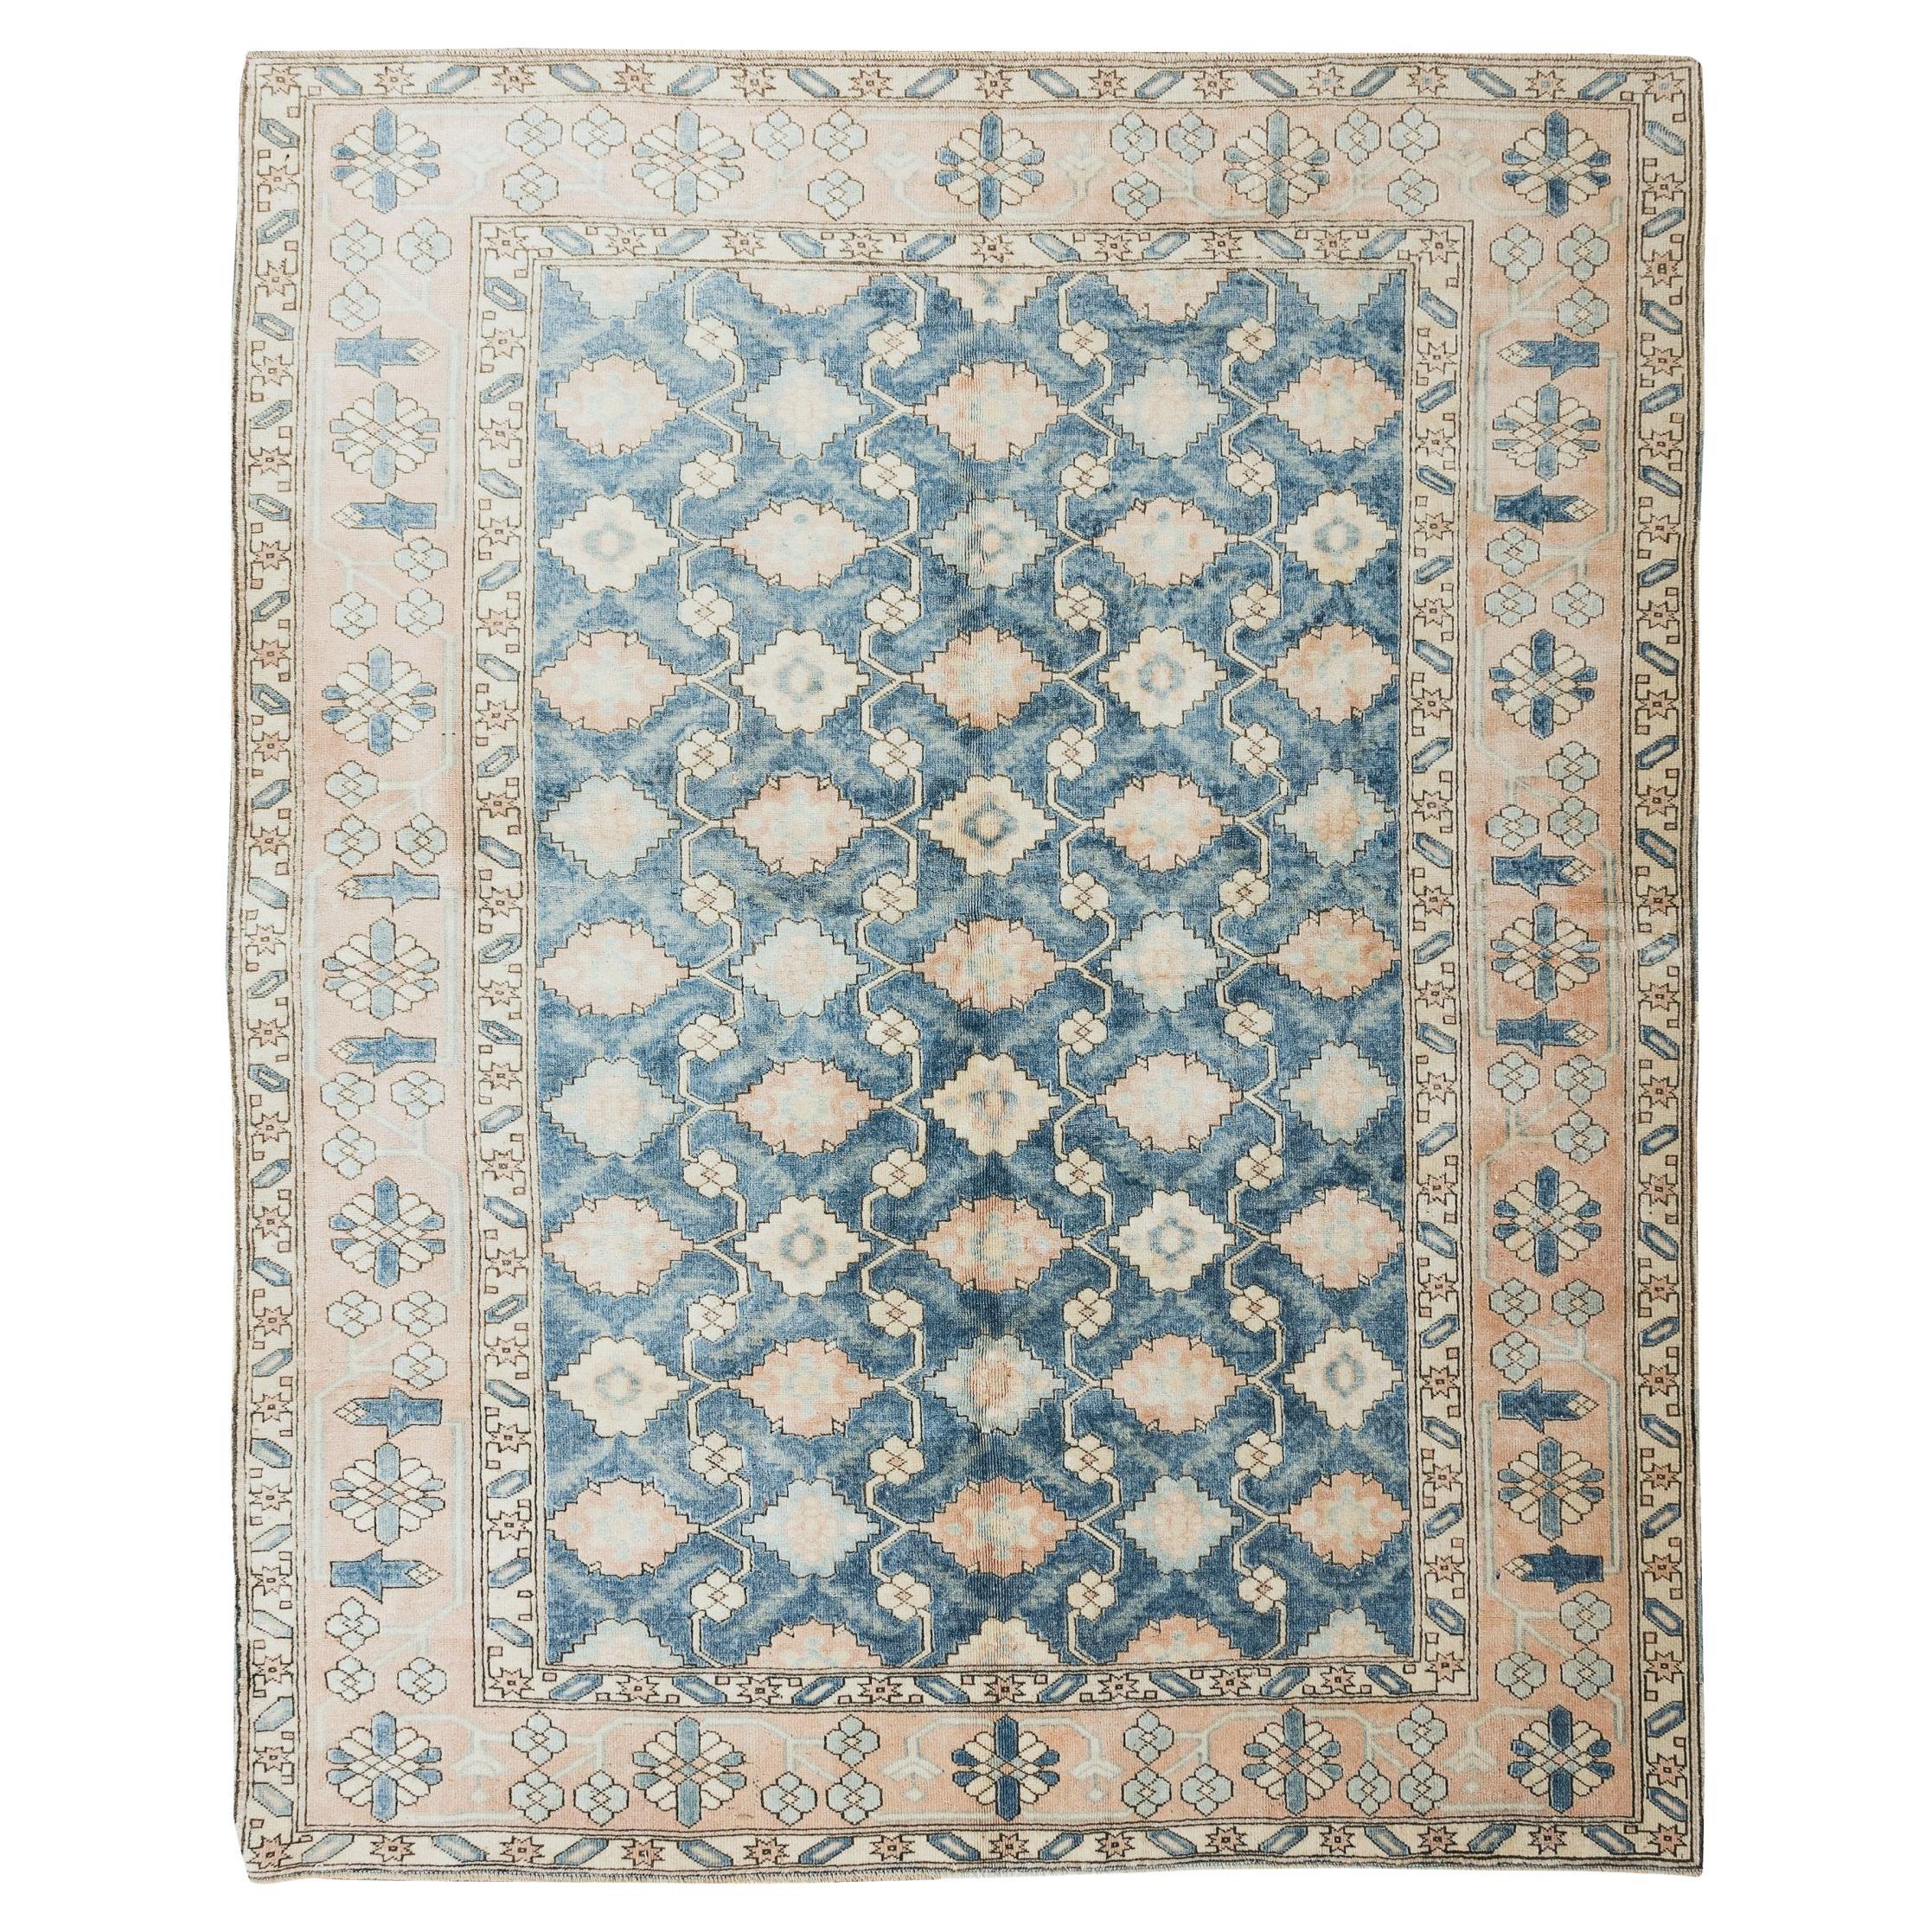 7x8.6 Ft Handgefertigter türkischer Teppich für Heim und Büro, authentischer Vintage-Blumenteppich